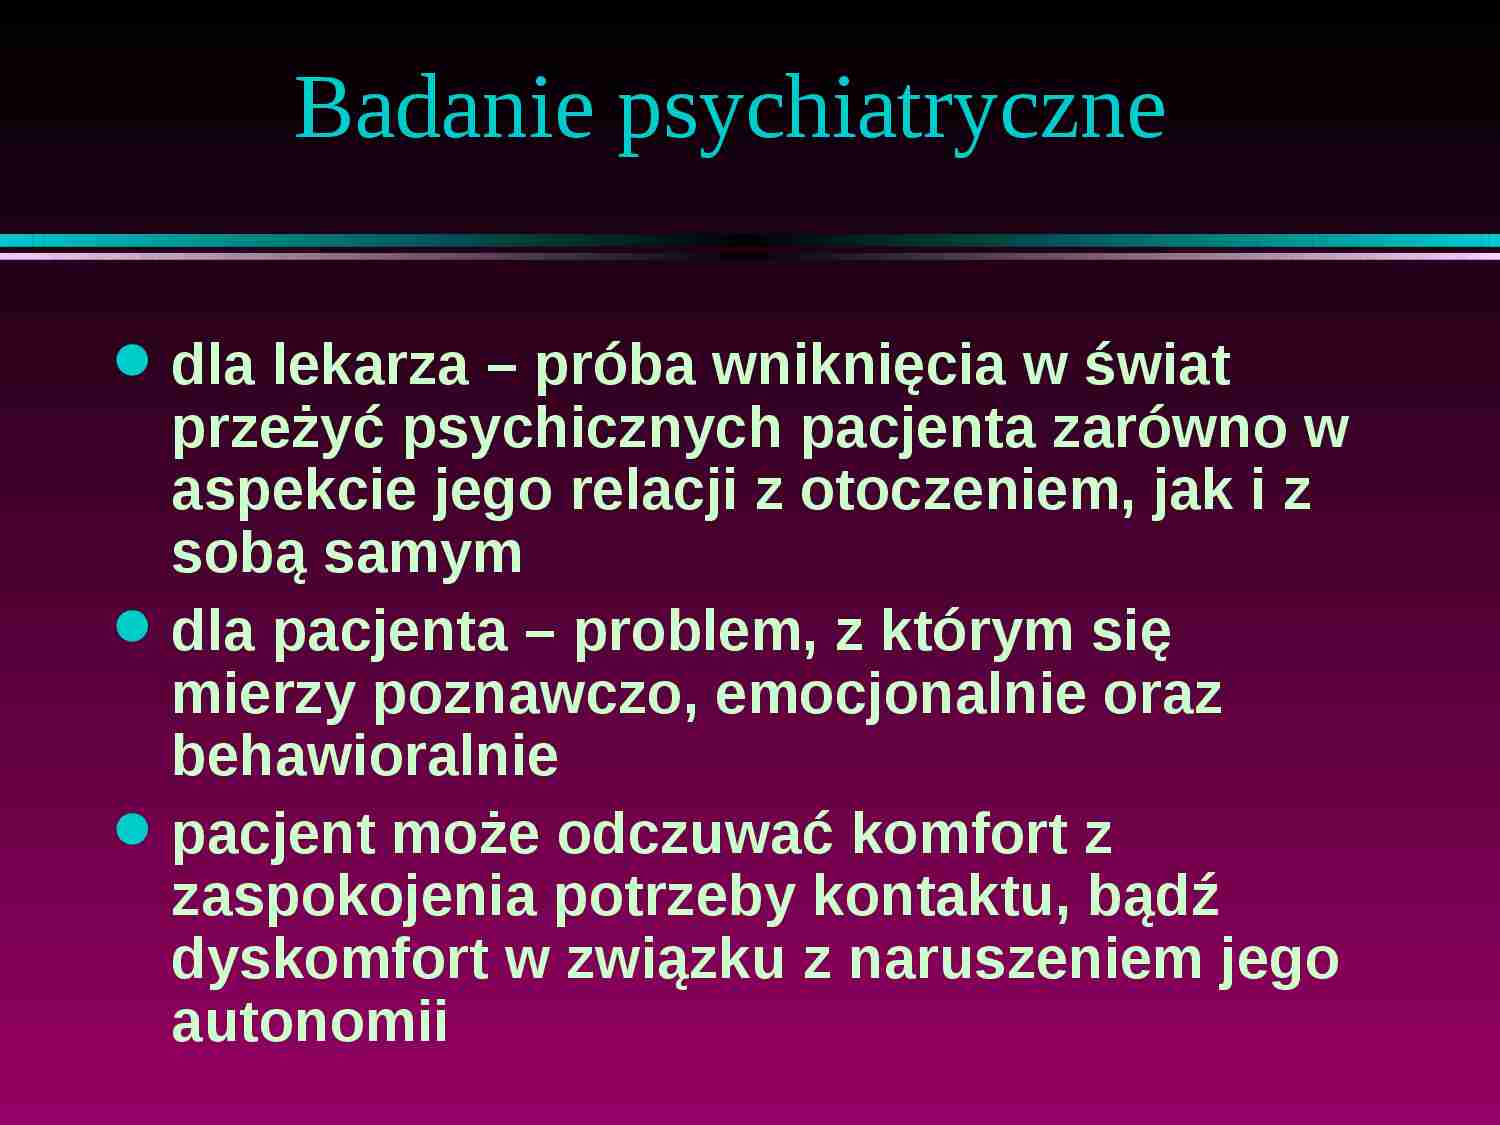 Badanie psychiatryczne - strona 1